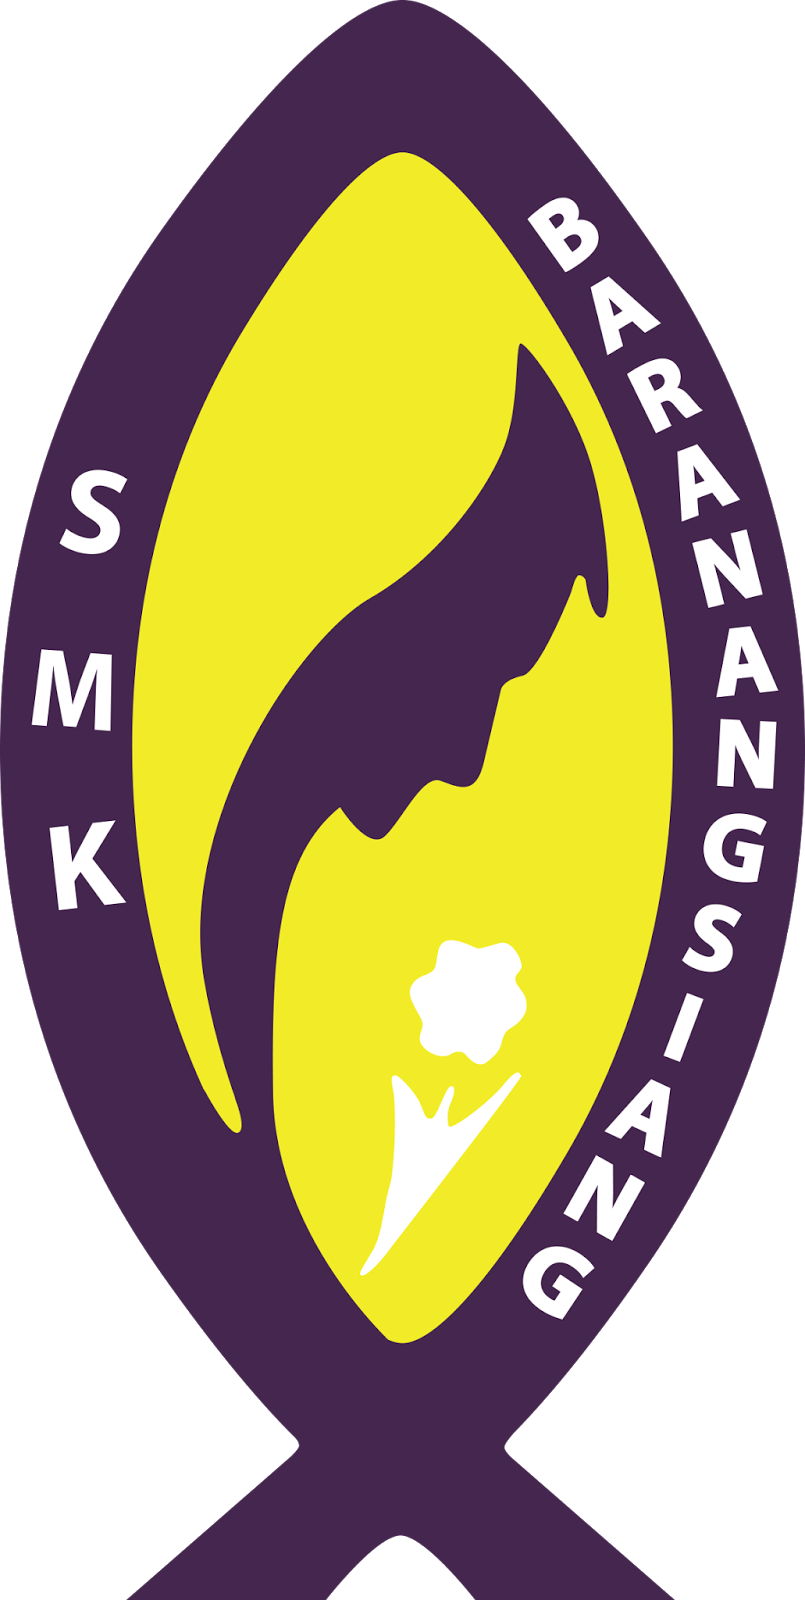  Logo  SMK Baranang Siang Bogor